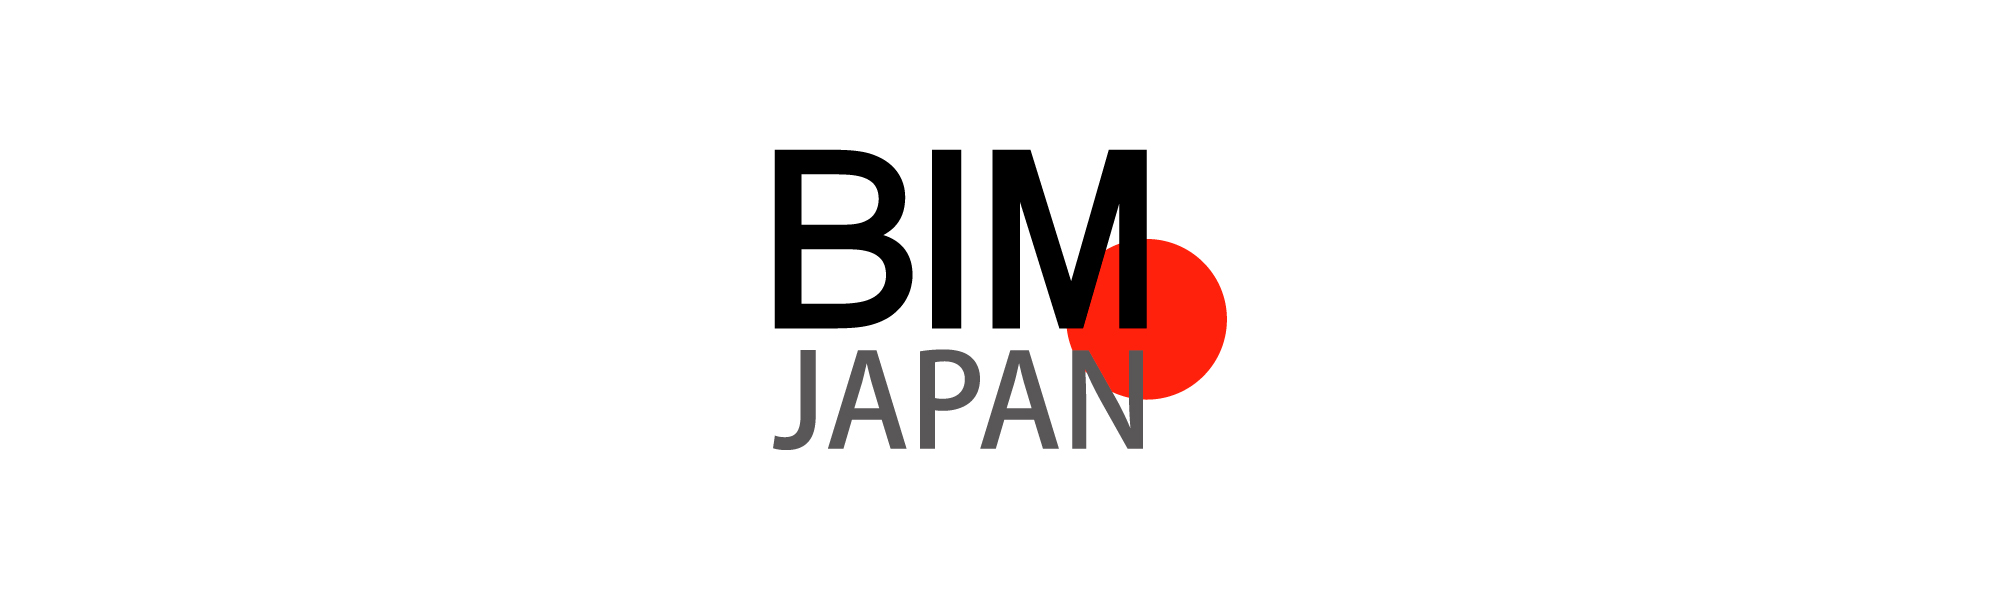 BIM-JAPANは国内でのBIMやCIM、i-Constructionや自動運転の促進を目指し、測位情報を活用した新たなサービスを提供して参ります。